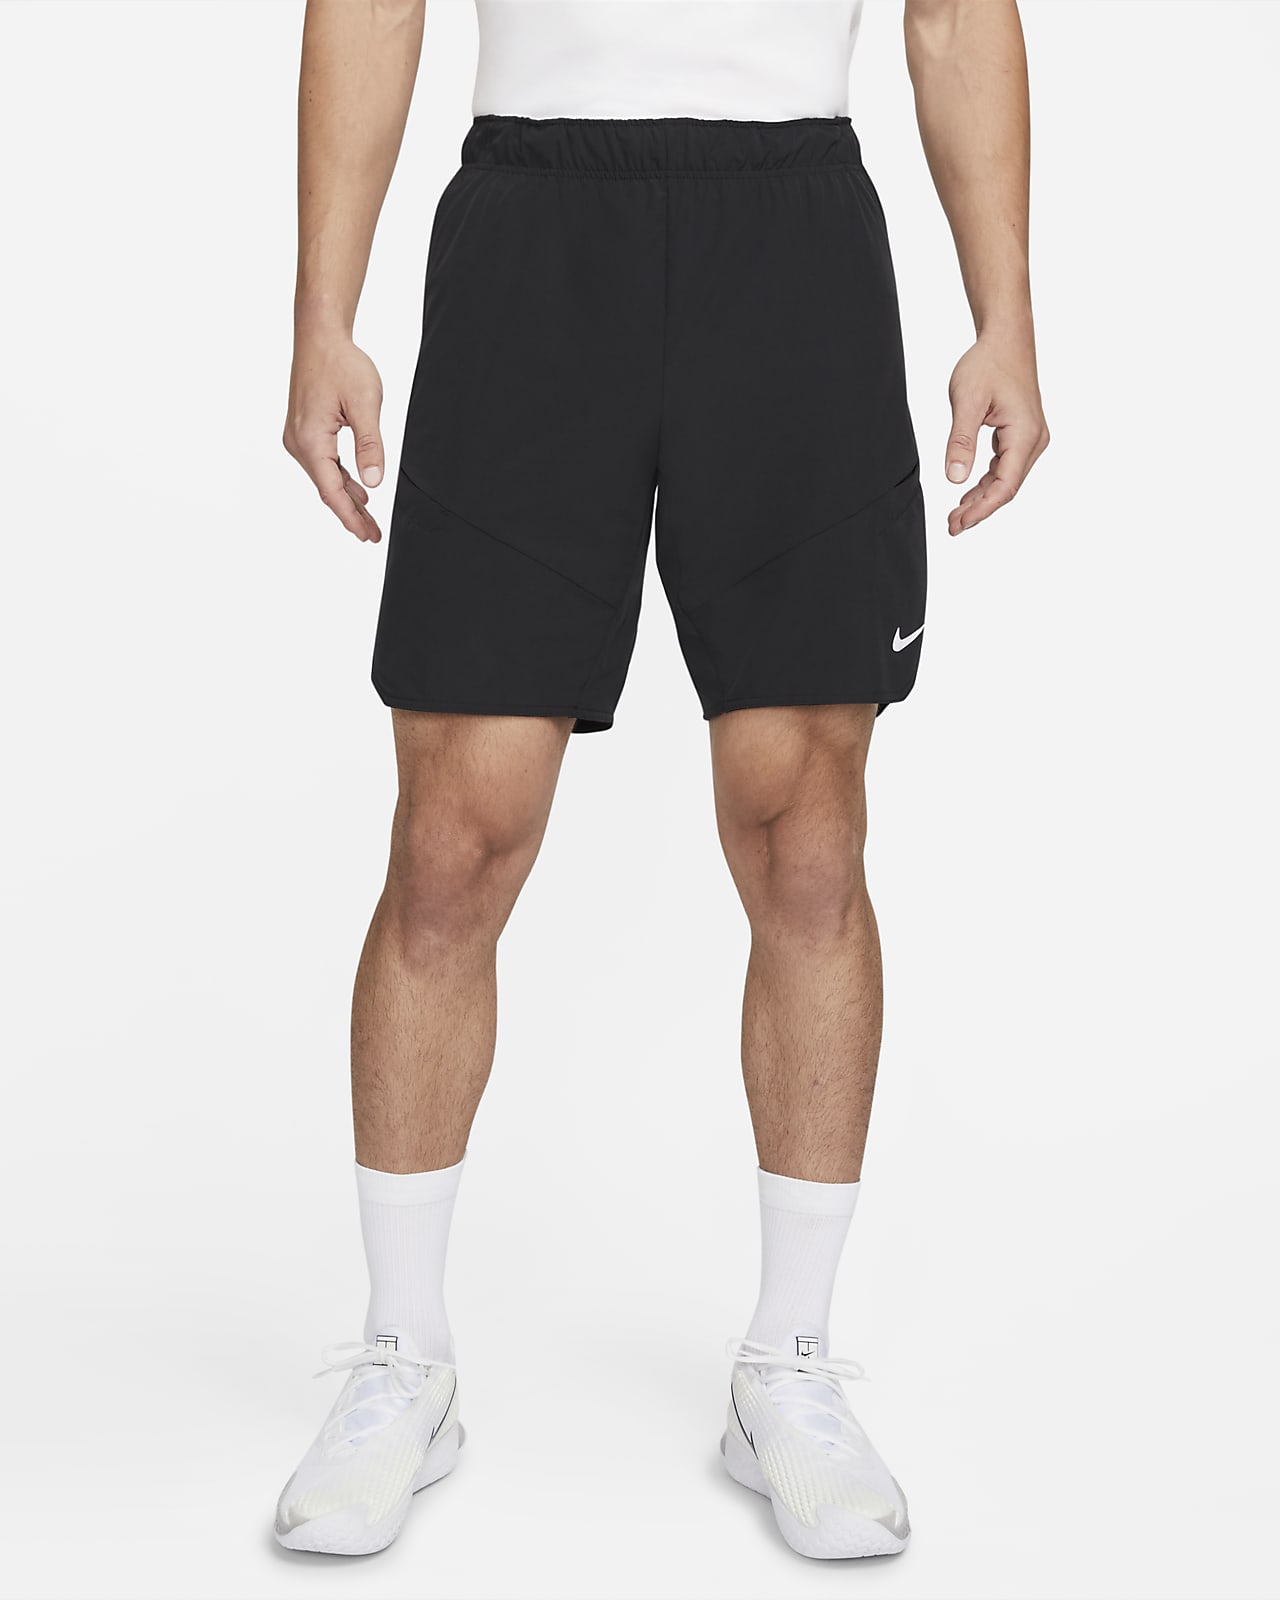 NikeCourt Dri-FIT Advantage Men's Tennis Shorts. Nike.com